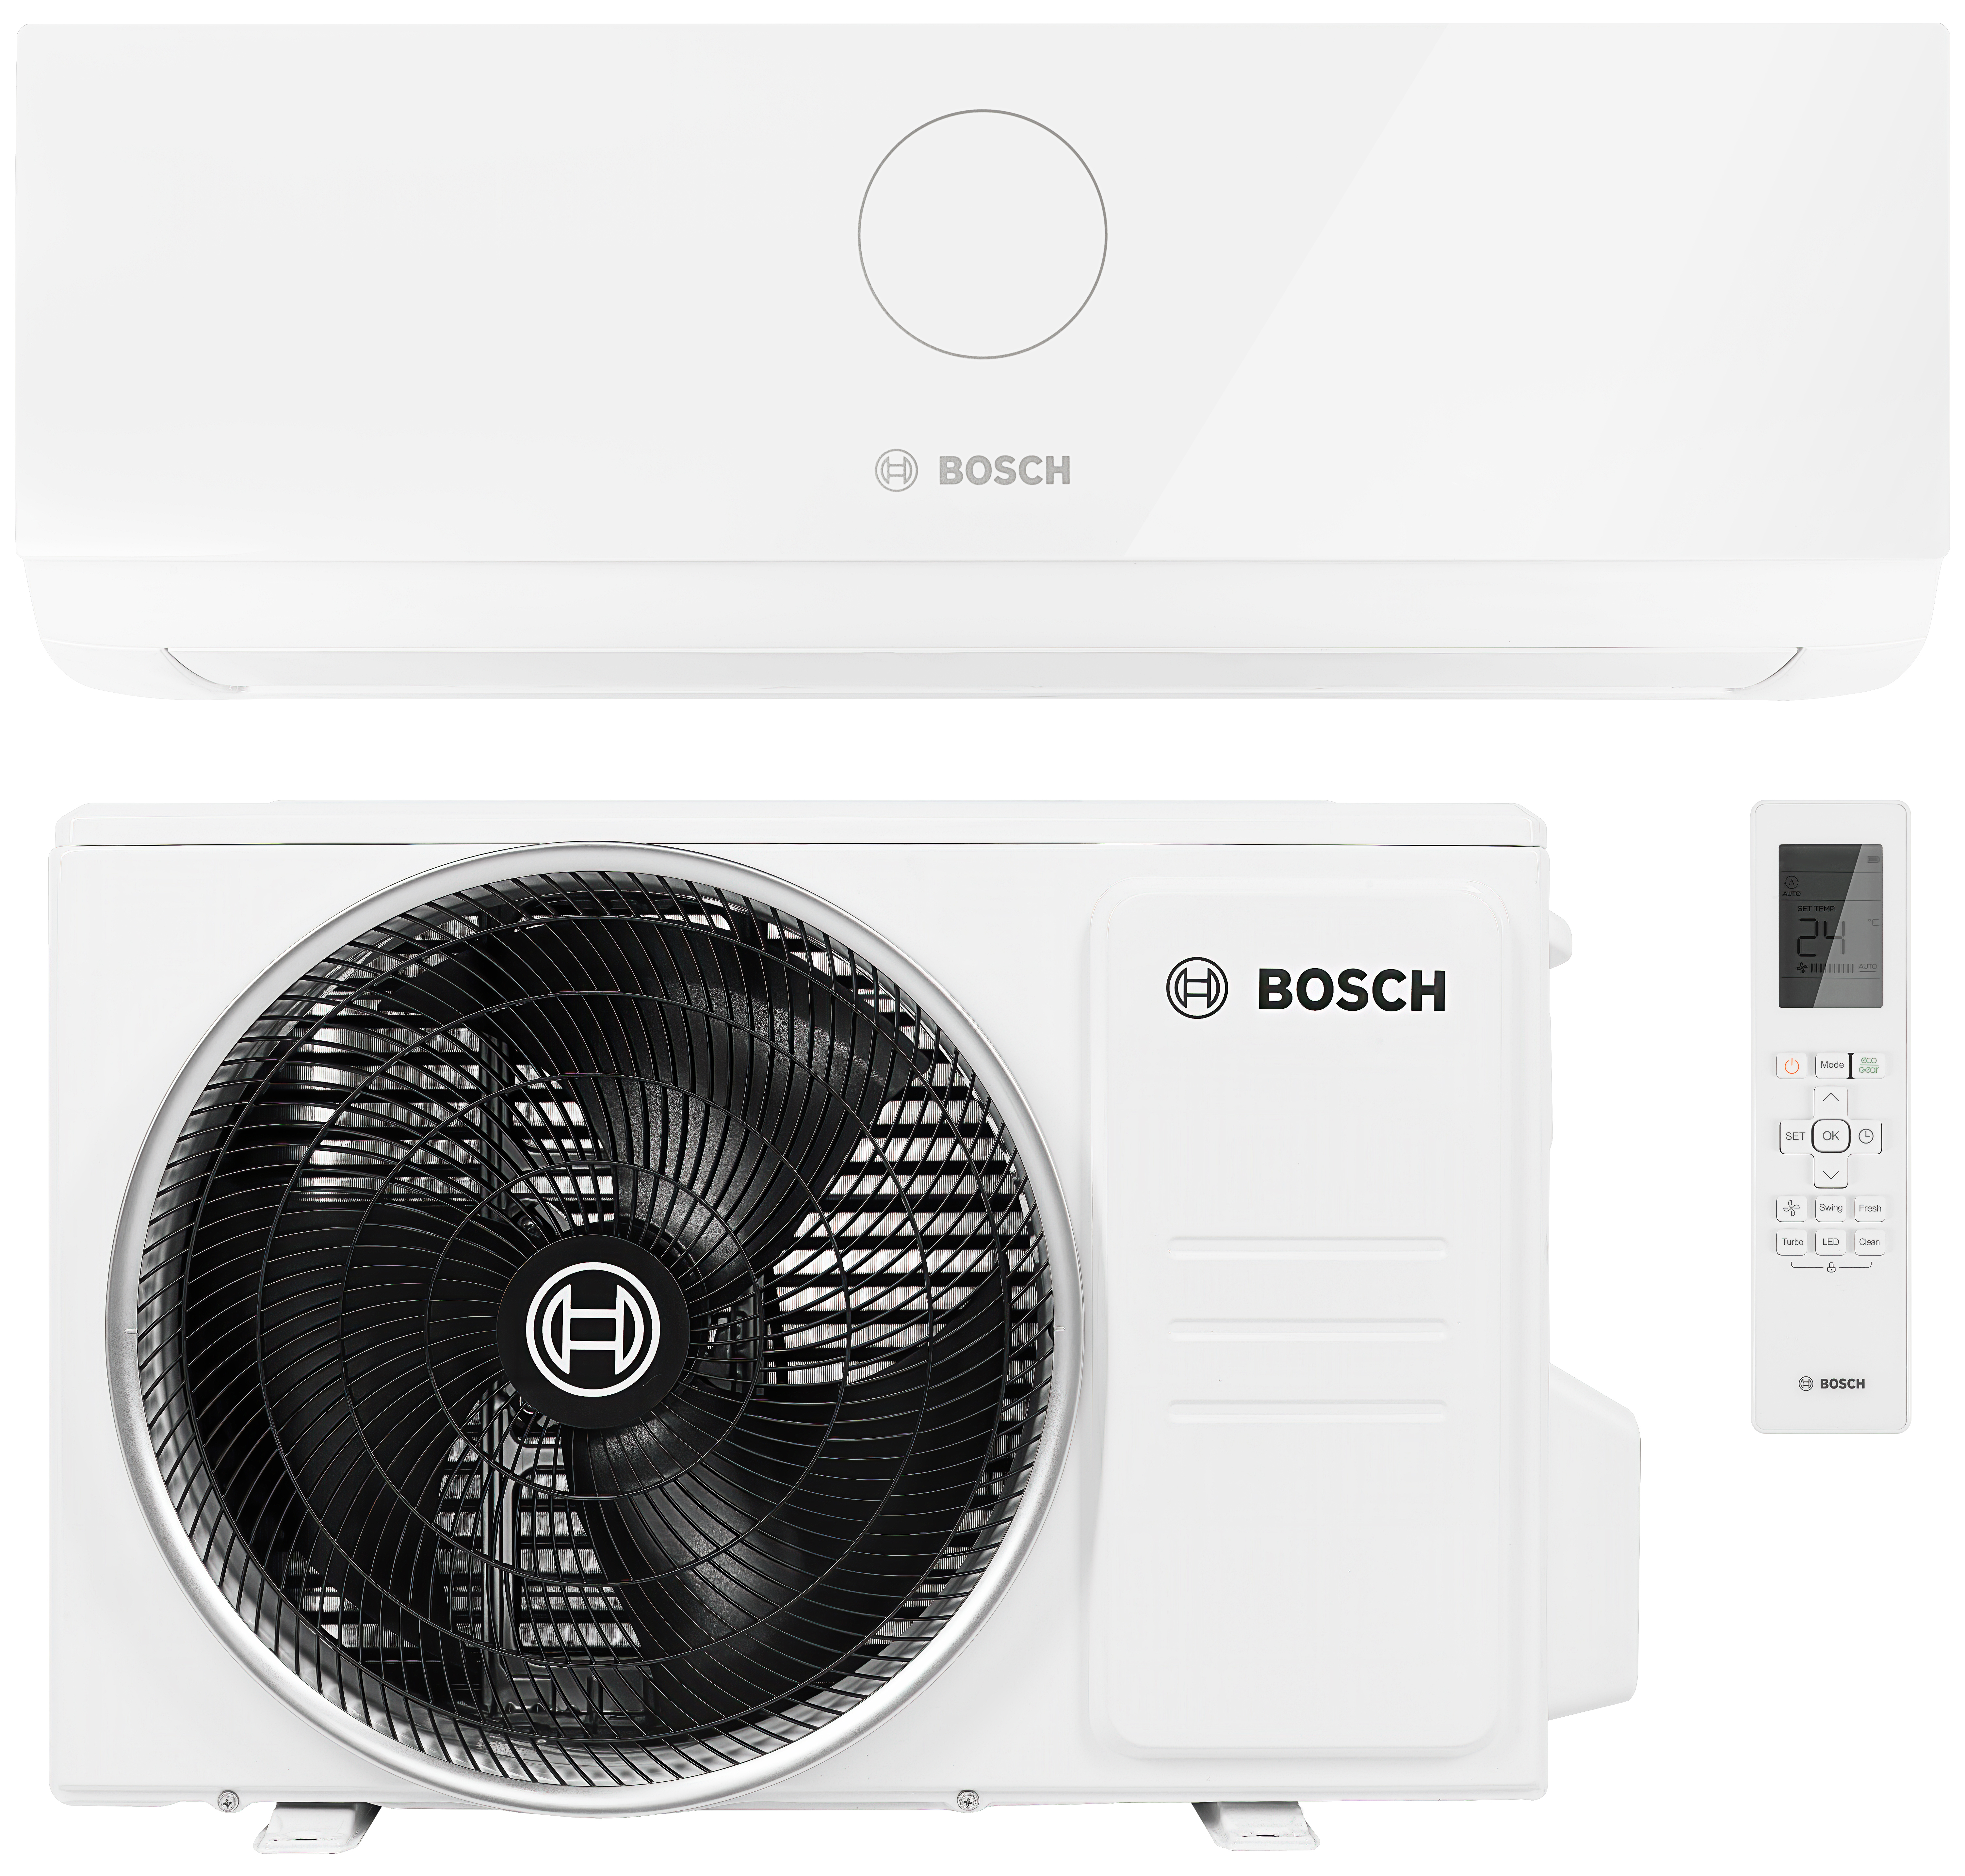 Bosch Climate CL3000i 70 E